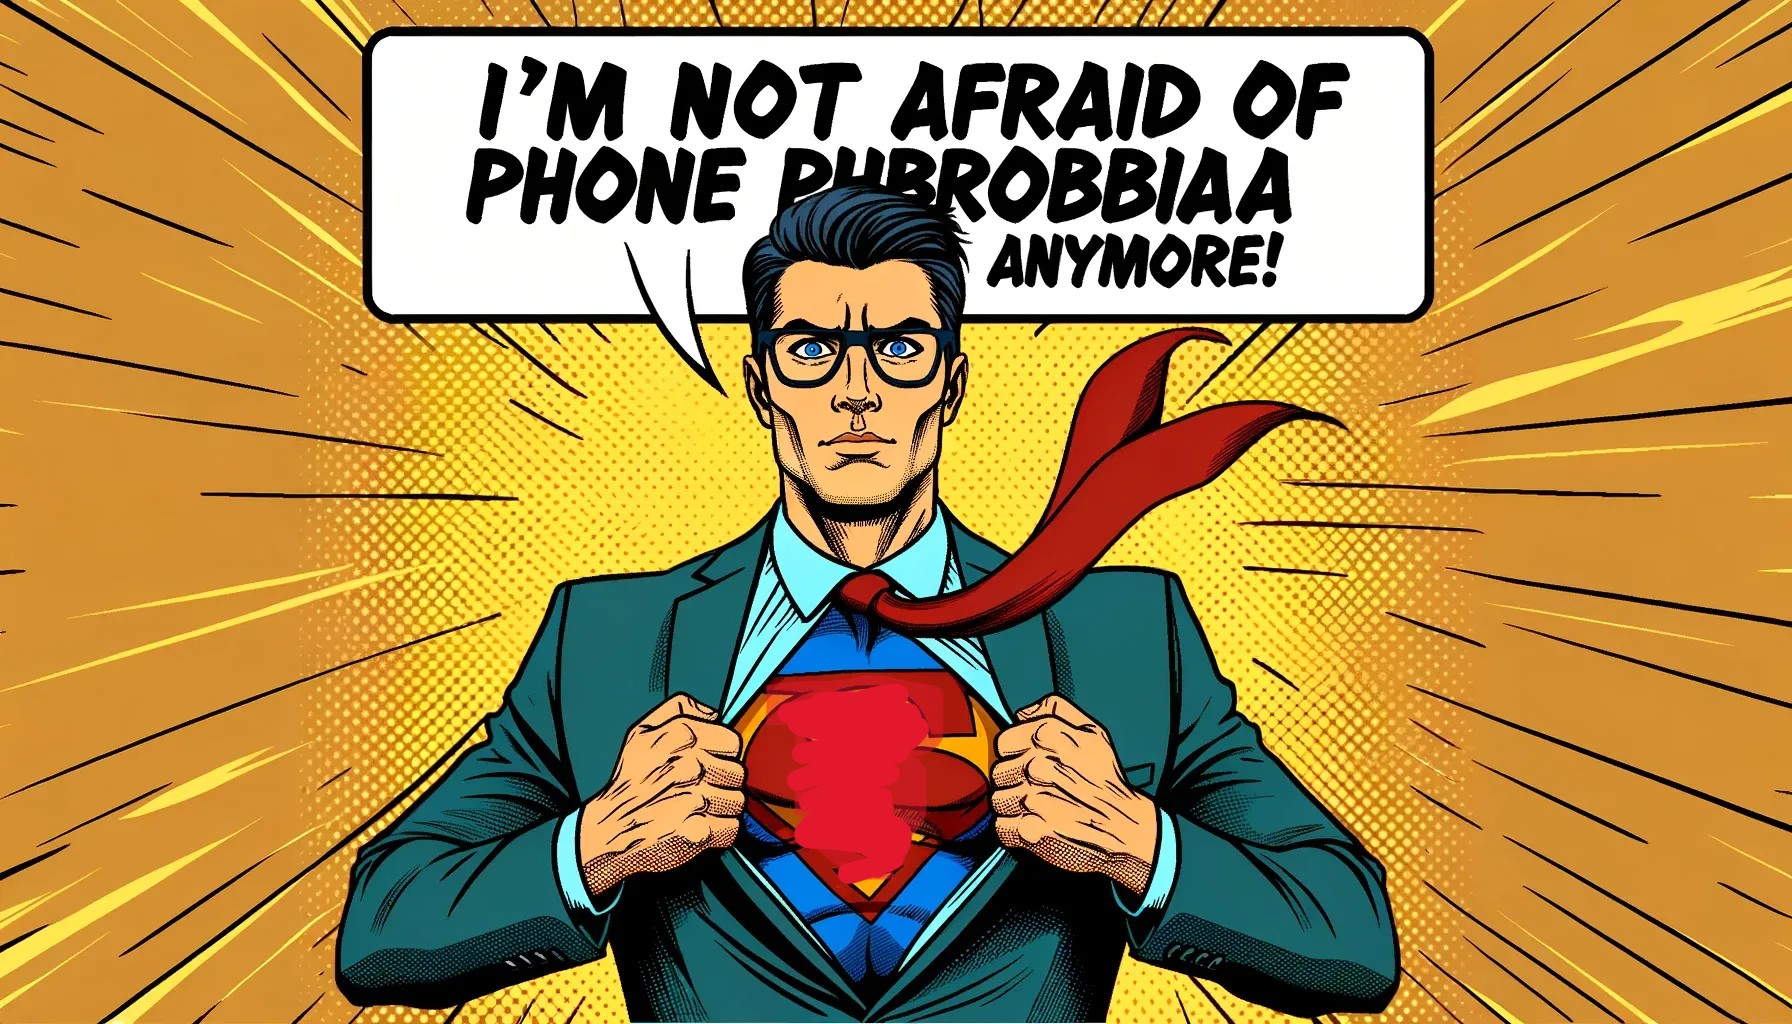 I'm not afraid of phone phobia